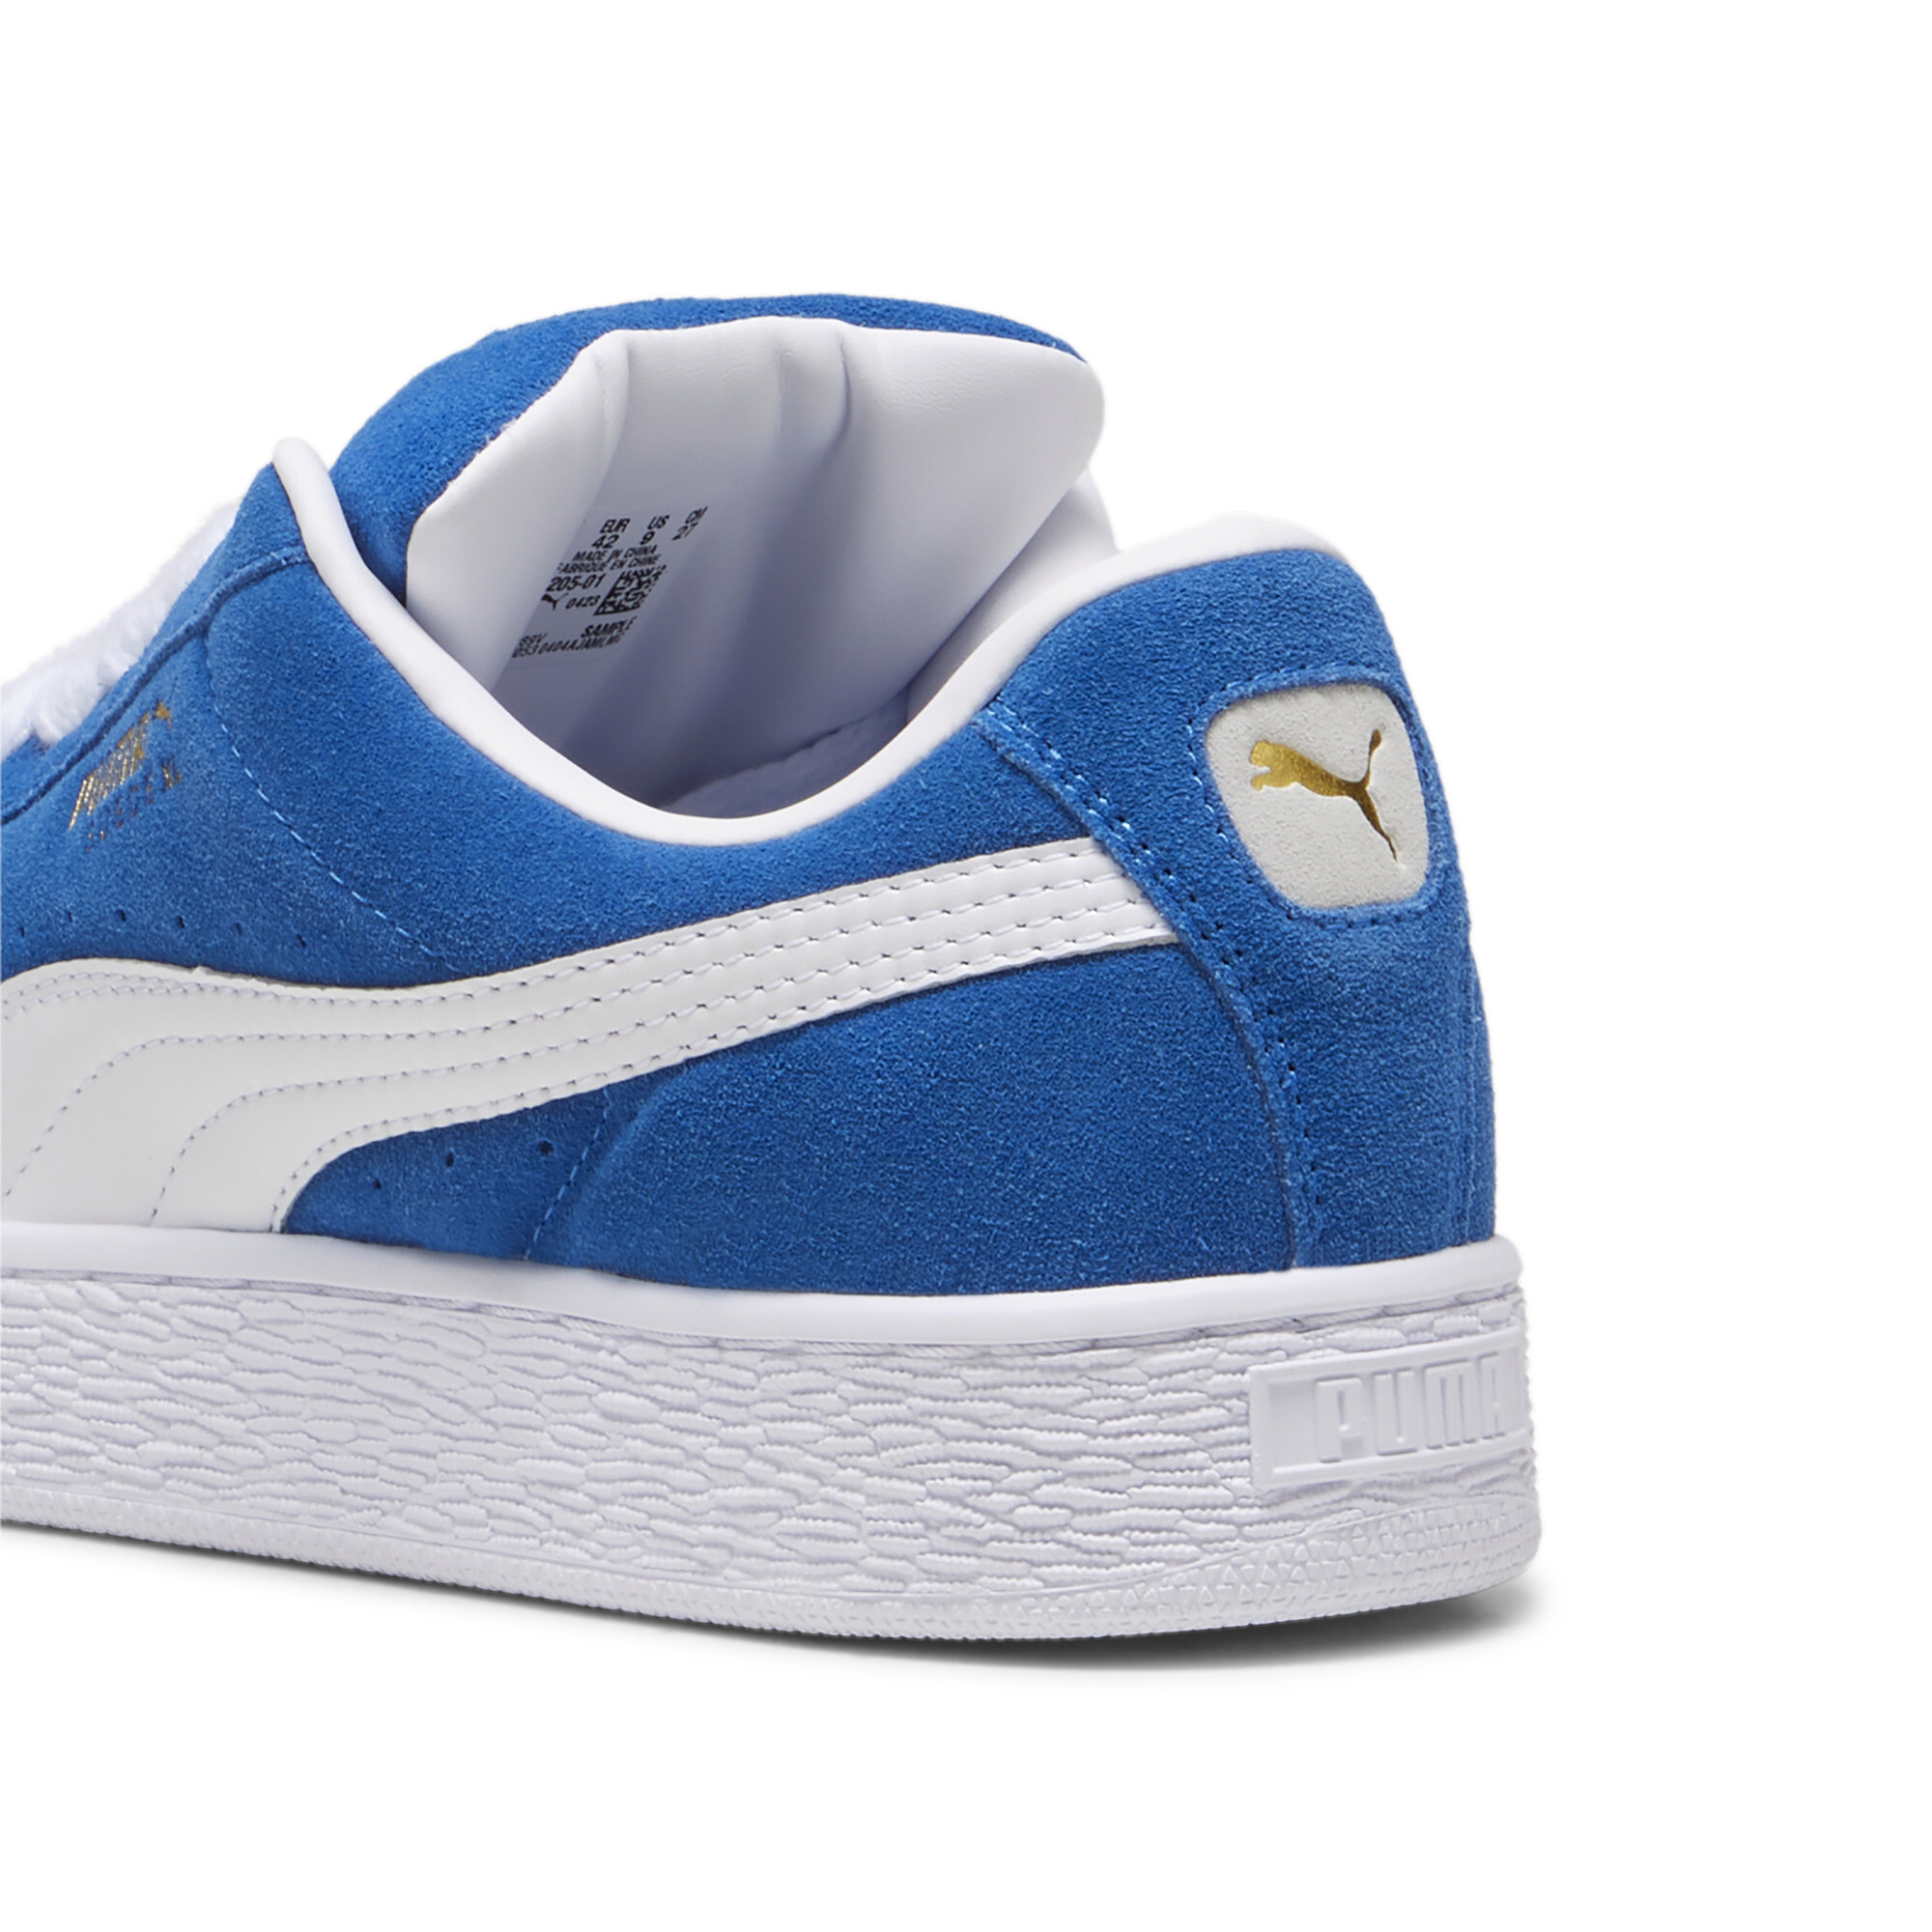 Unisex PUMA Suede XL Sneakers In Blue, Size EU 44